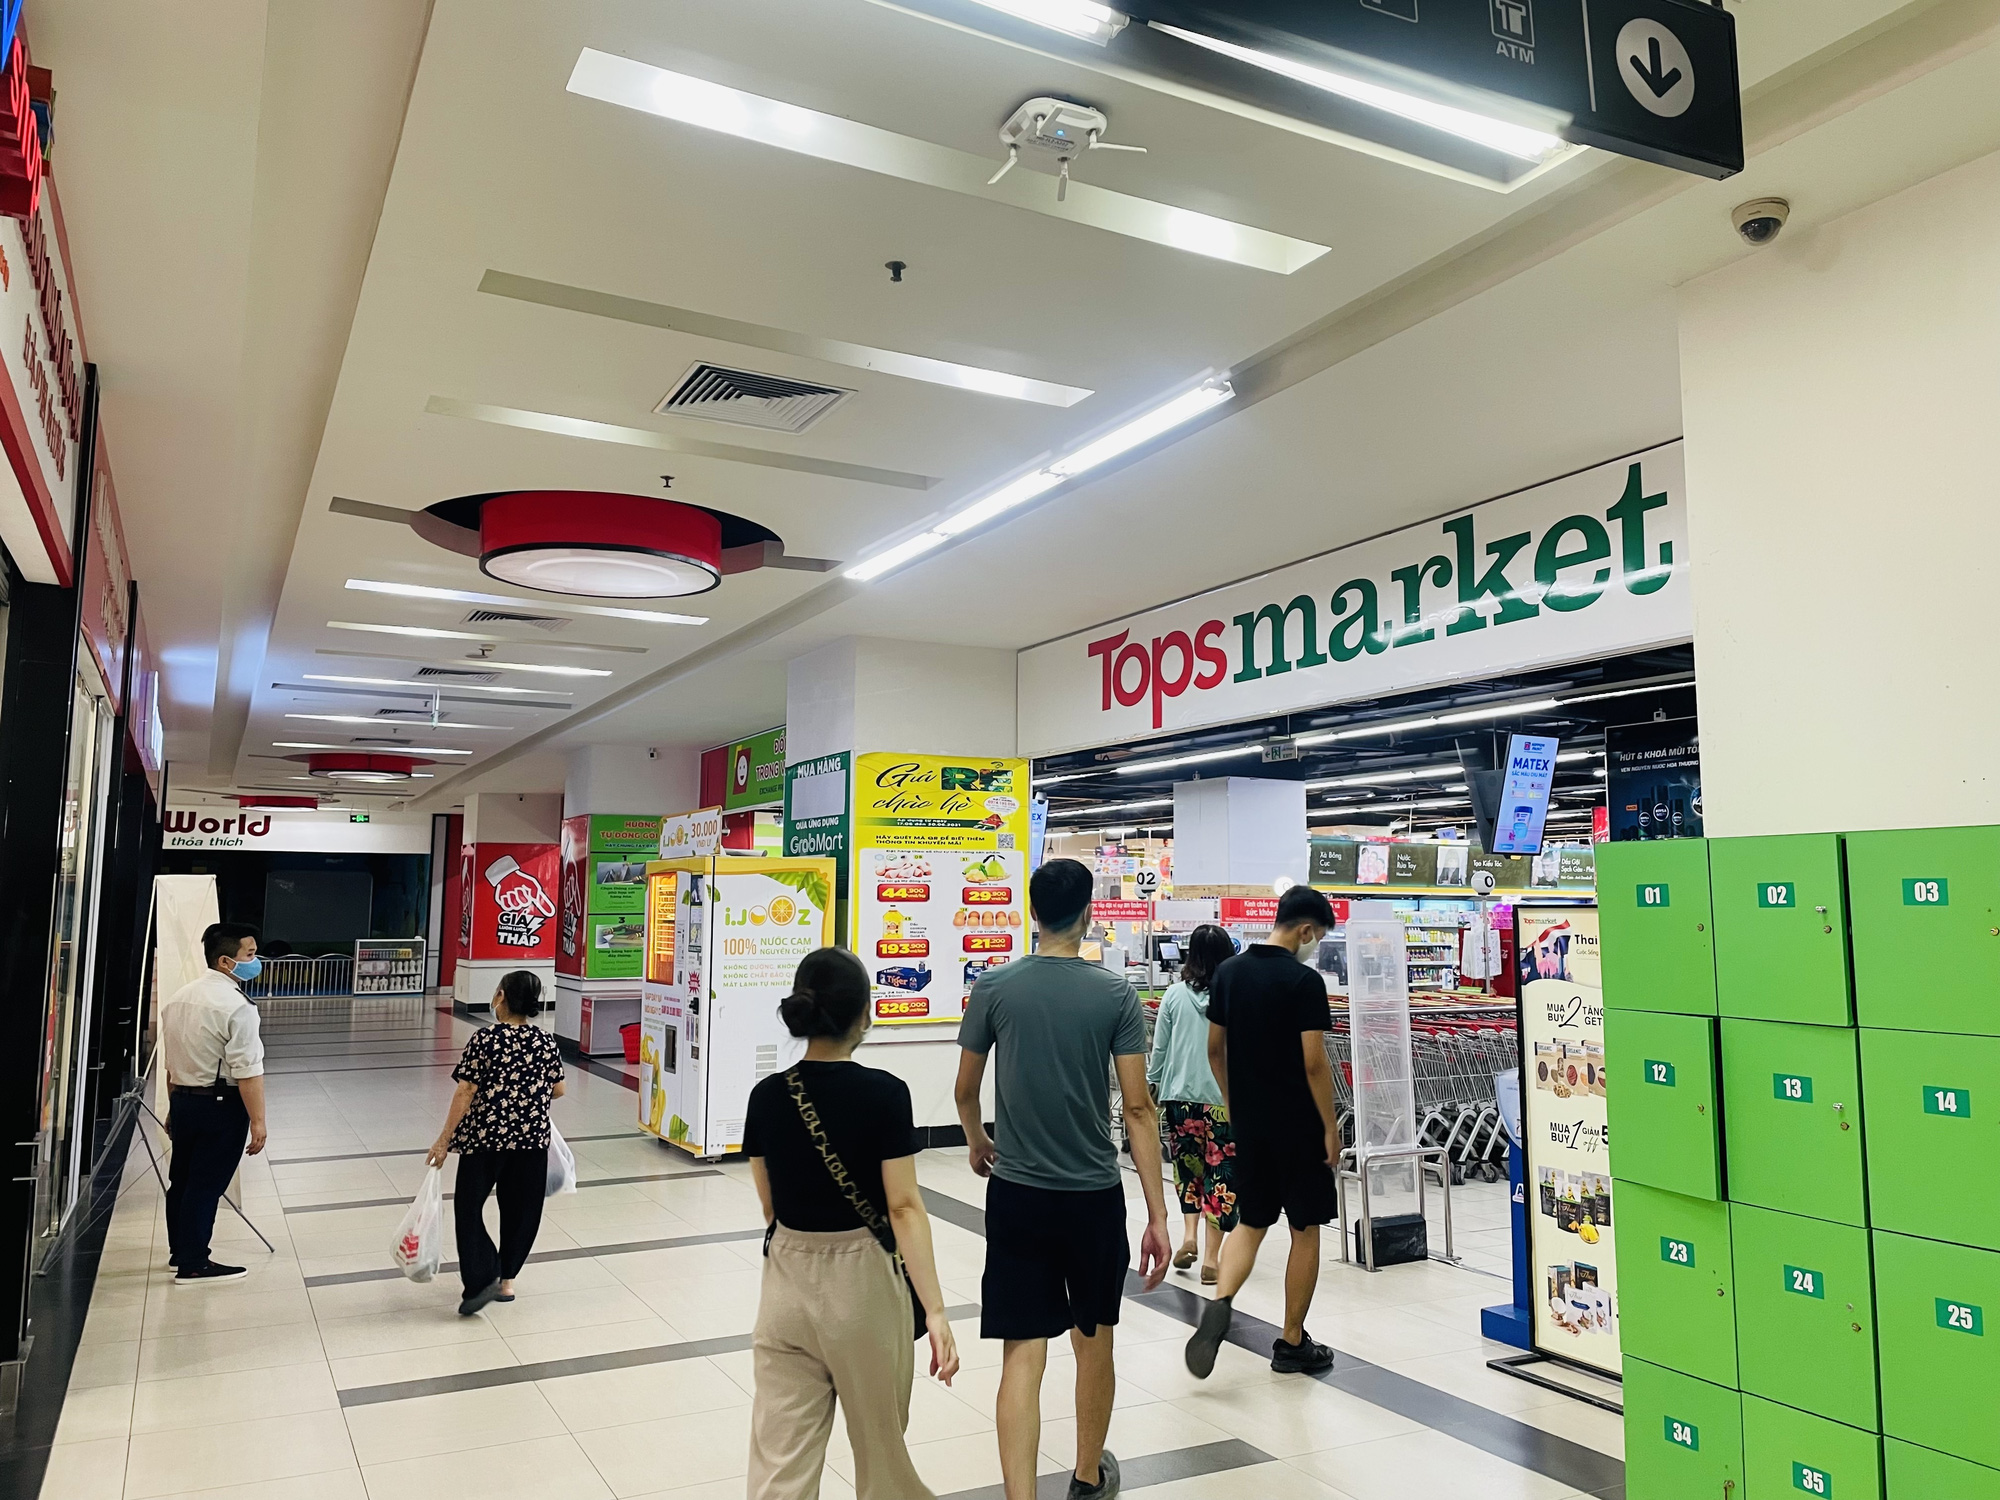 Hà Nội: Loạt siêu thị Big C đổi tên thành Tops Market - Ảnh 1.